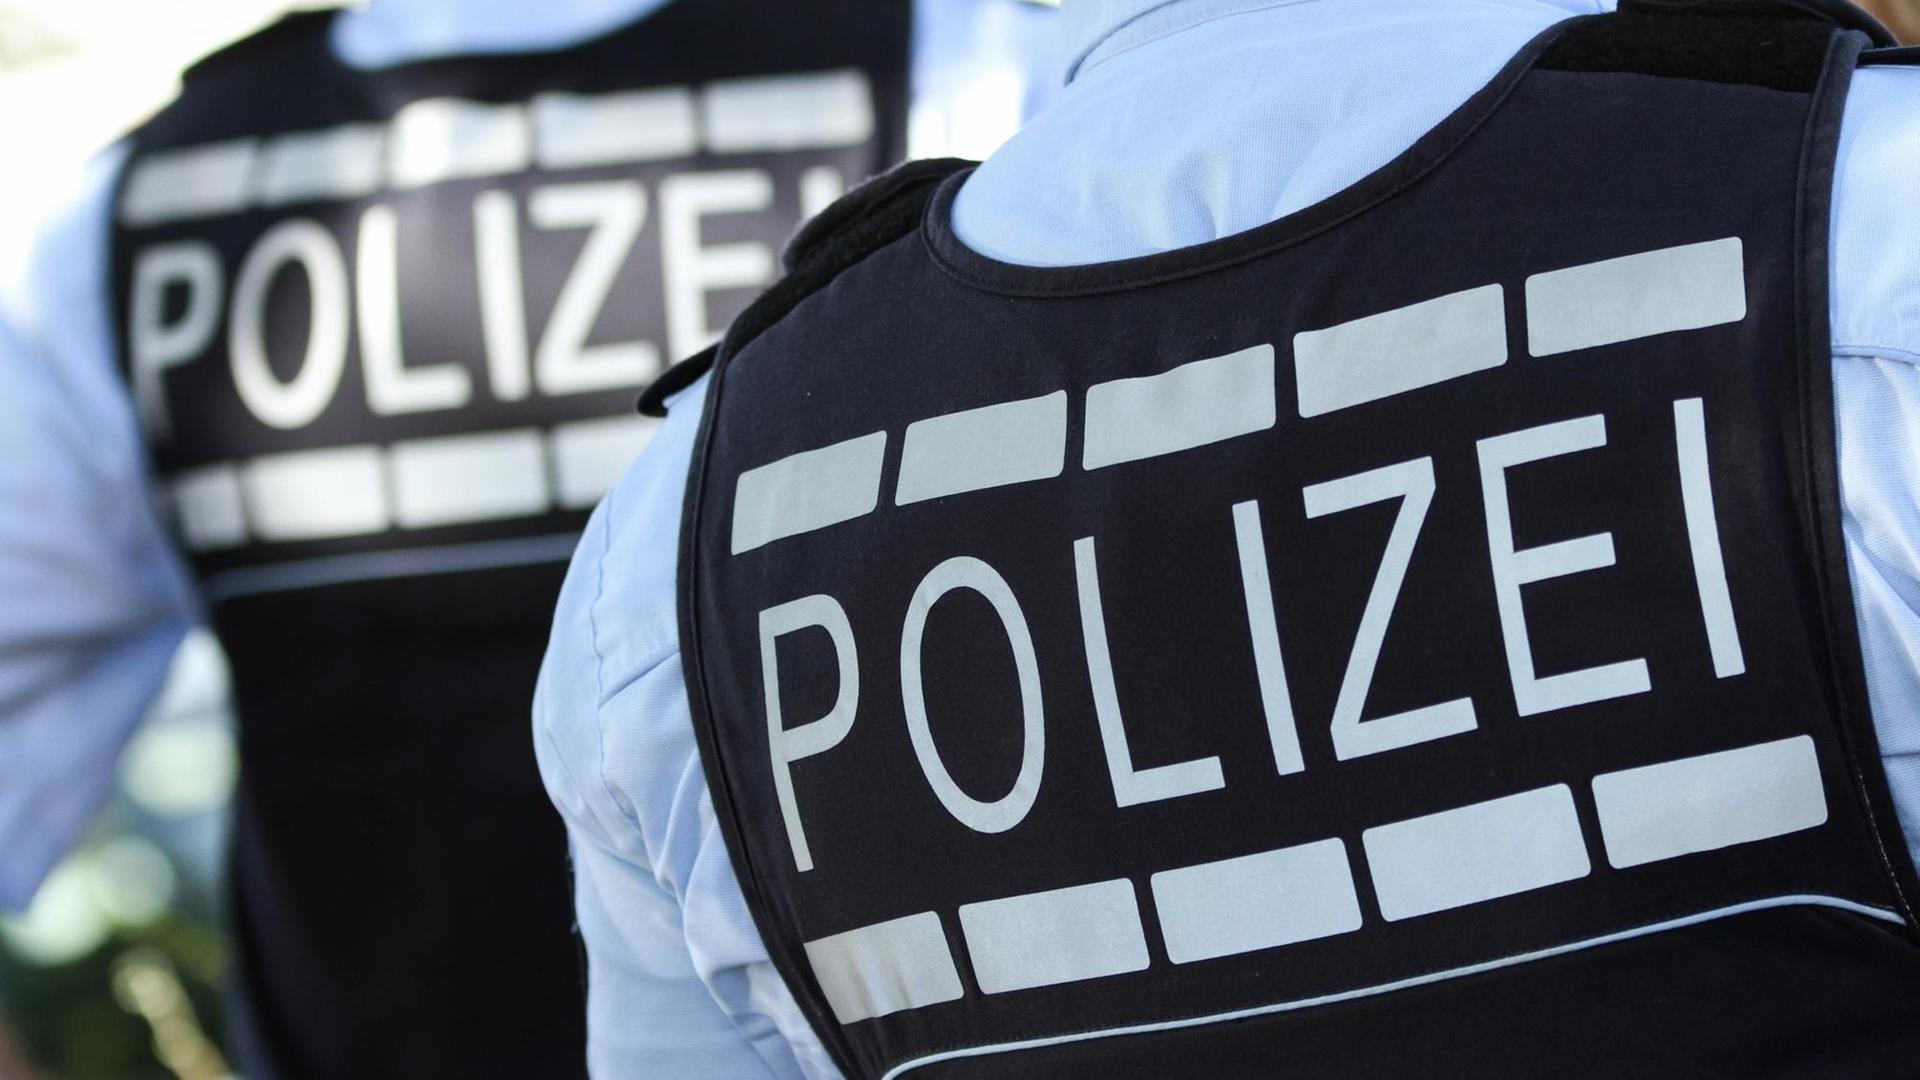 Die Rückansicht von zwei Polizistenwesten zeigen die Aufschrift "Polizei"